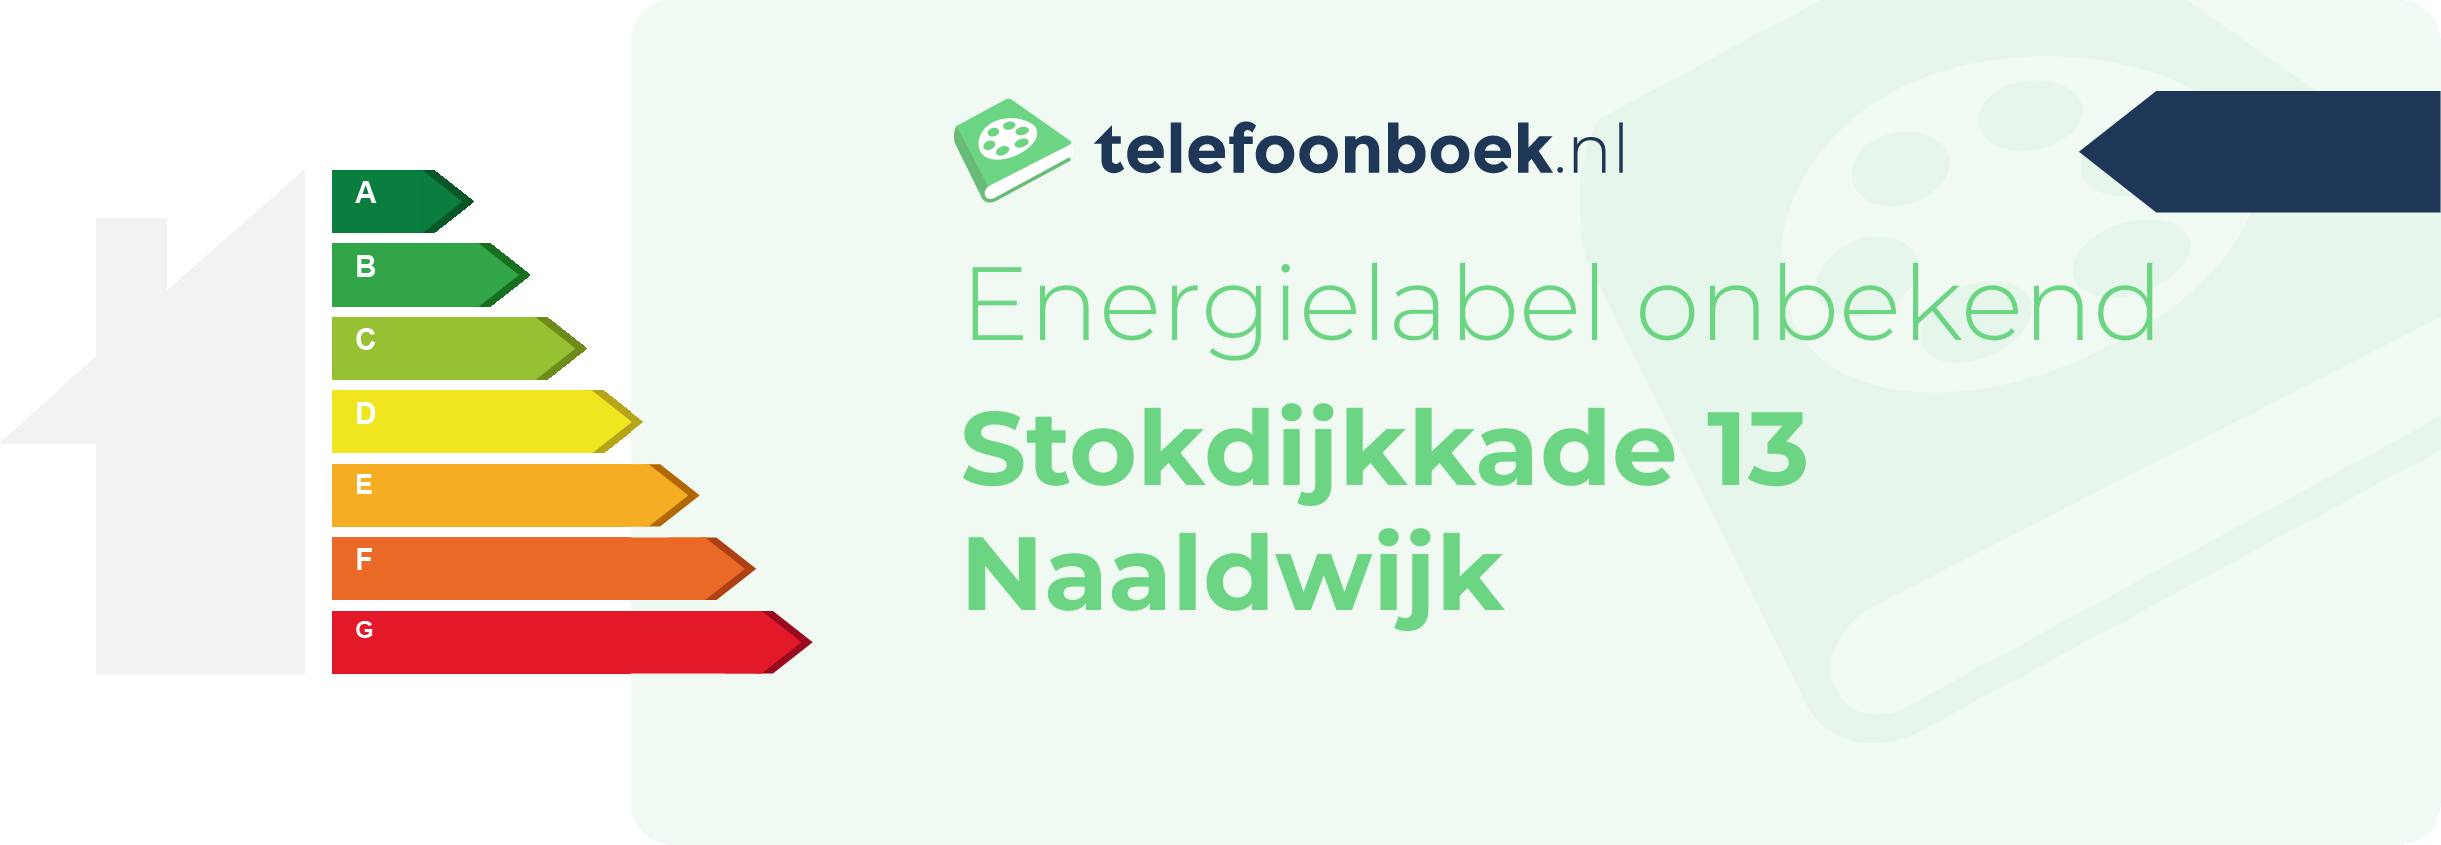 Energielabel Stokdijkkade 13 Naaldwijk